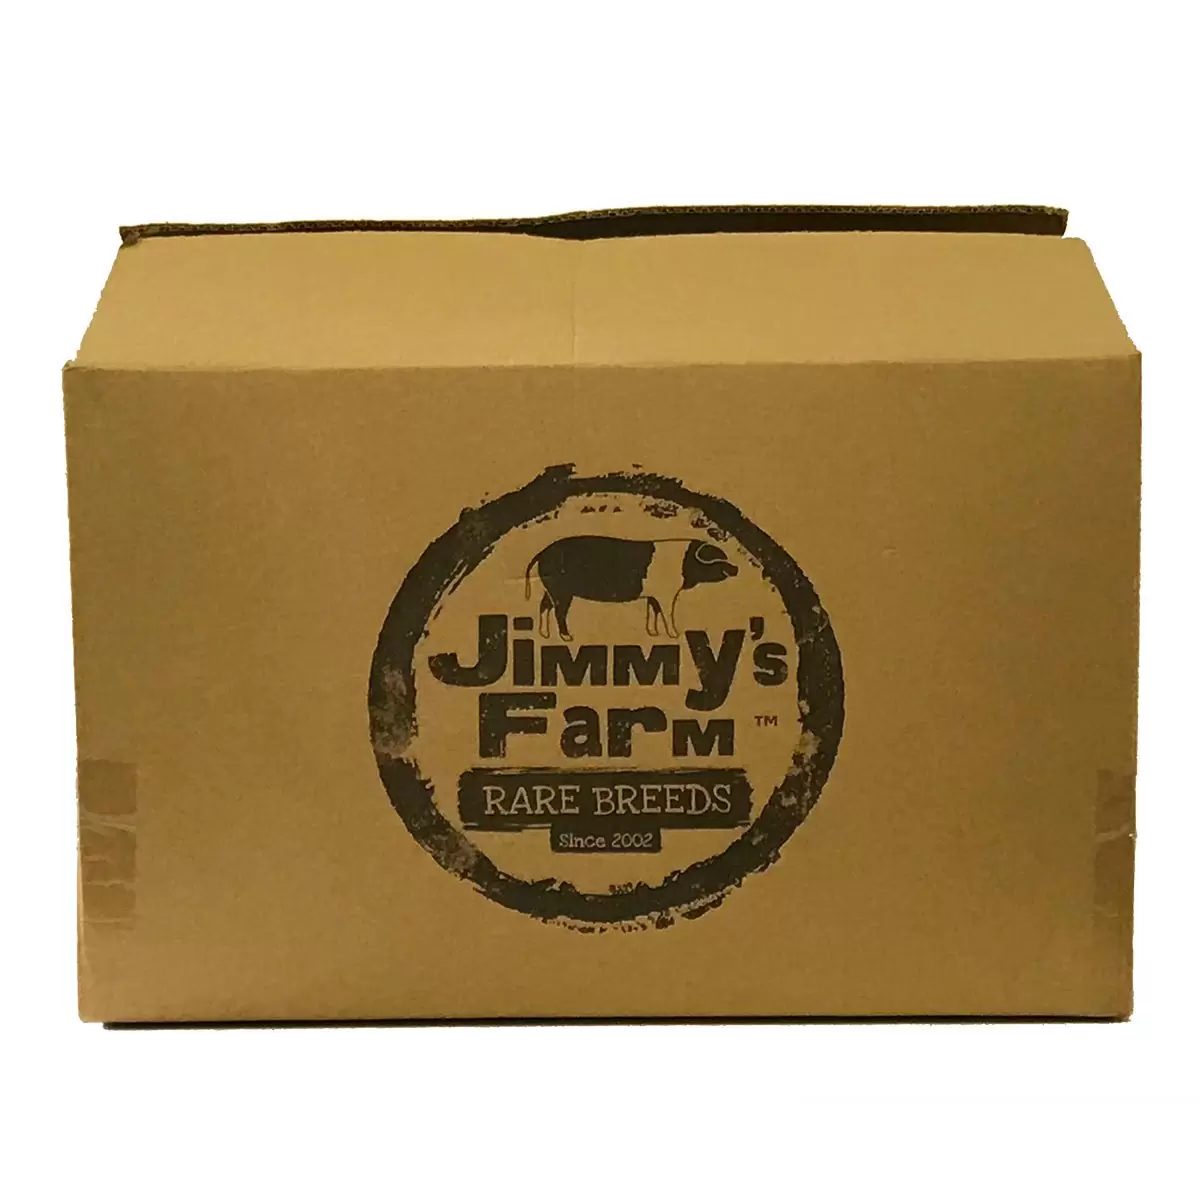 Jimmy's Farm Free Range Rustic Bronze Turkey, 7kg Minimum Weight (Serves 12-16 people)